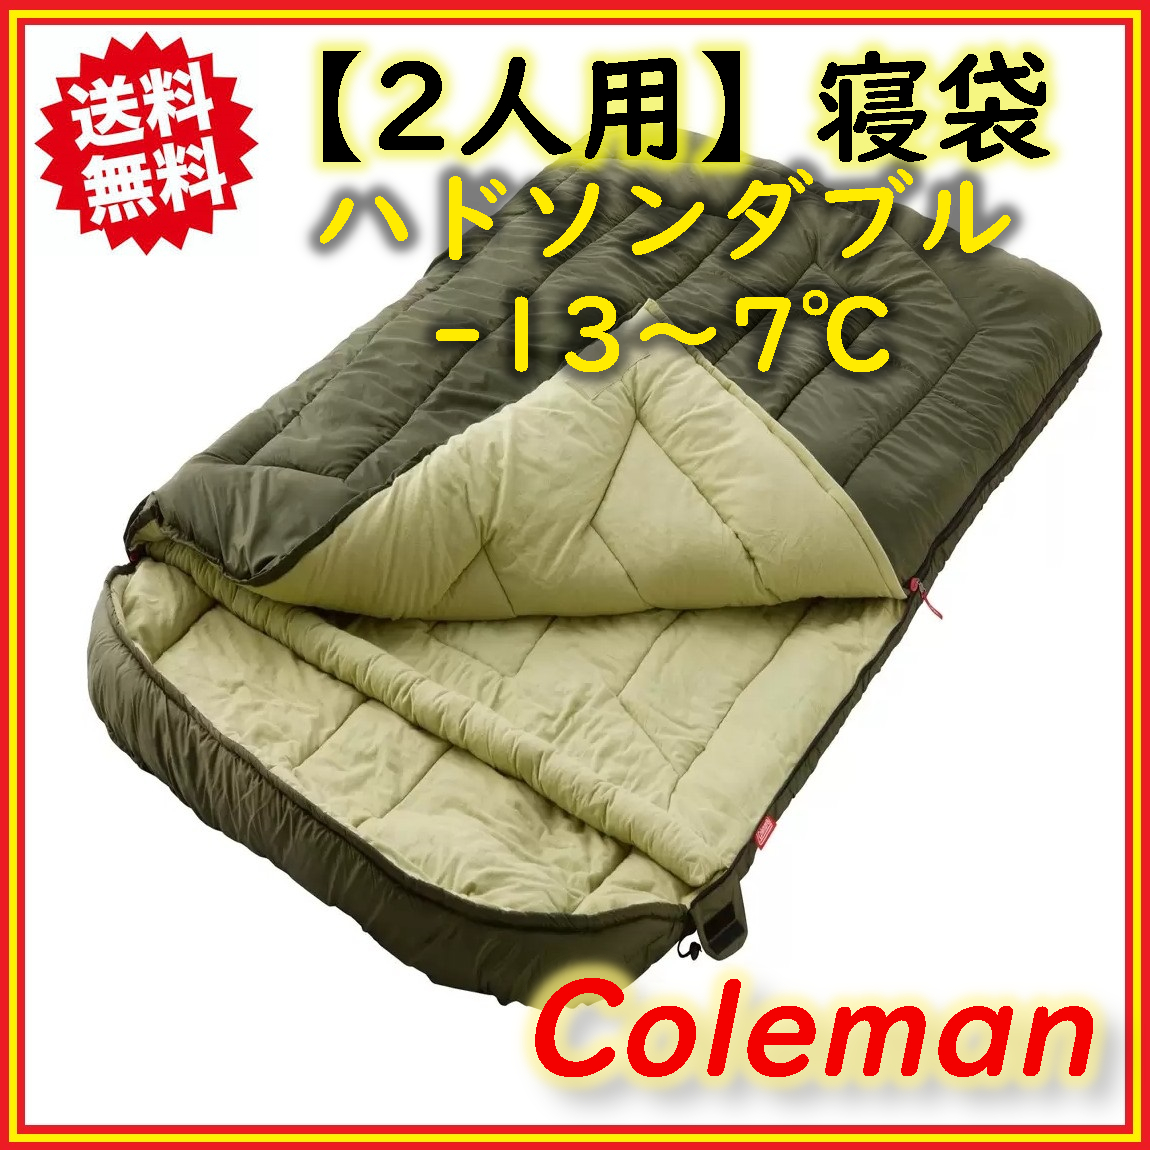 Coleman(コールマン) ハドソンダブル シュラフ 寝袋 2人用 封筒型 -13 